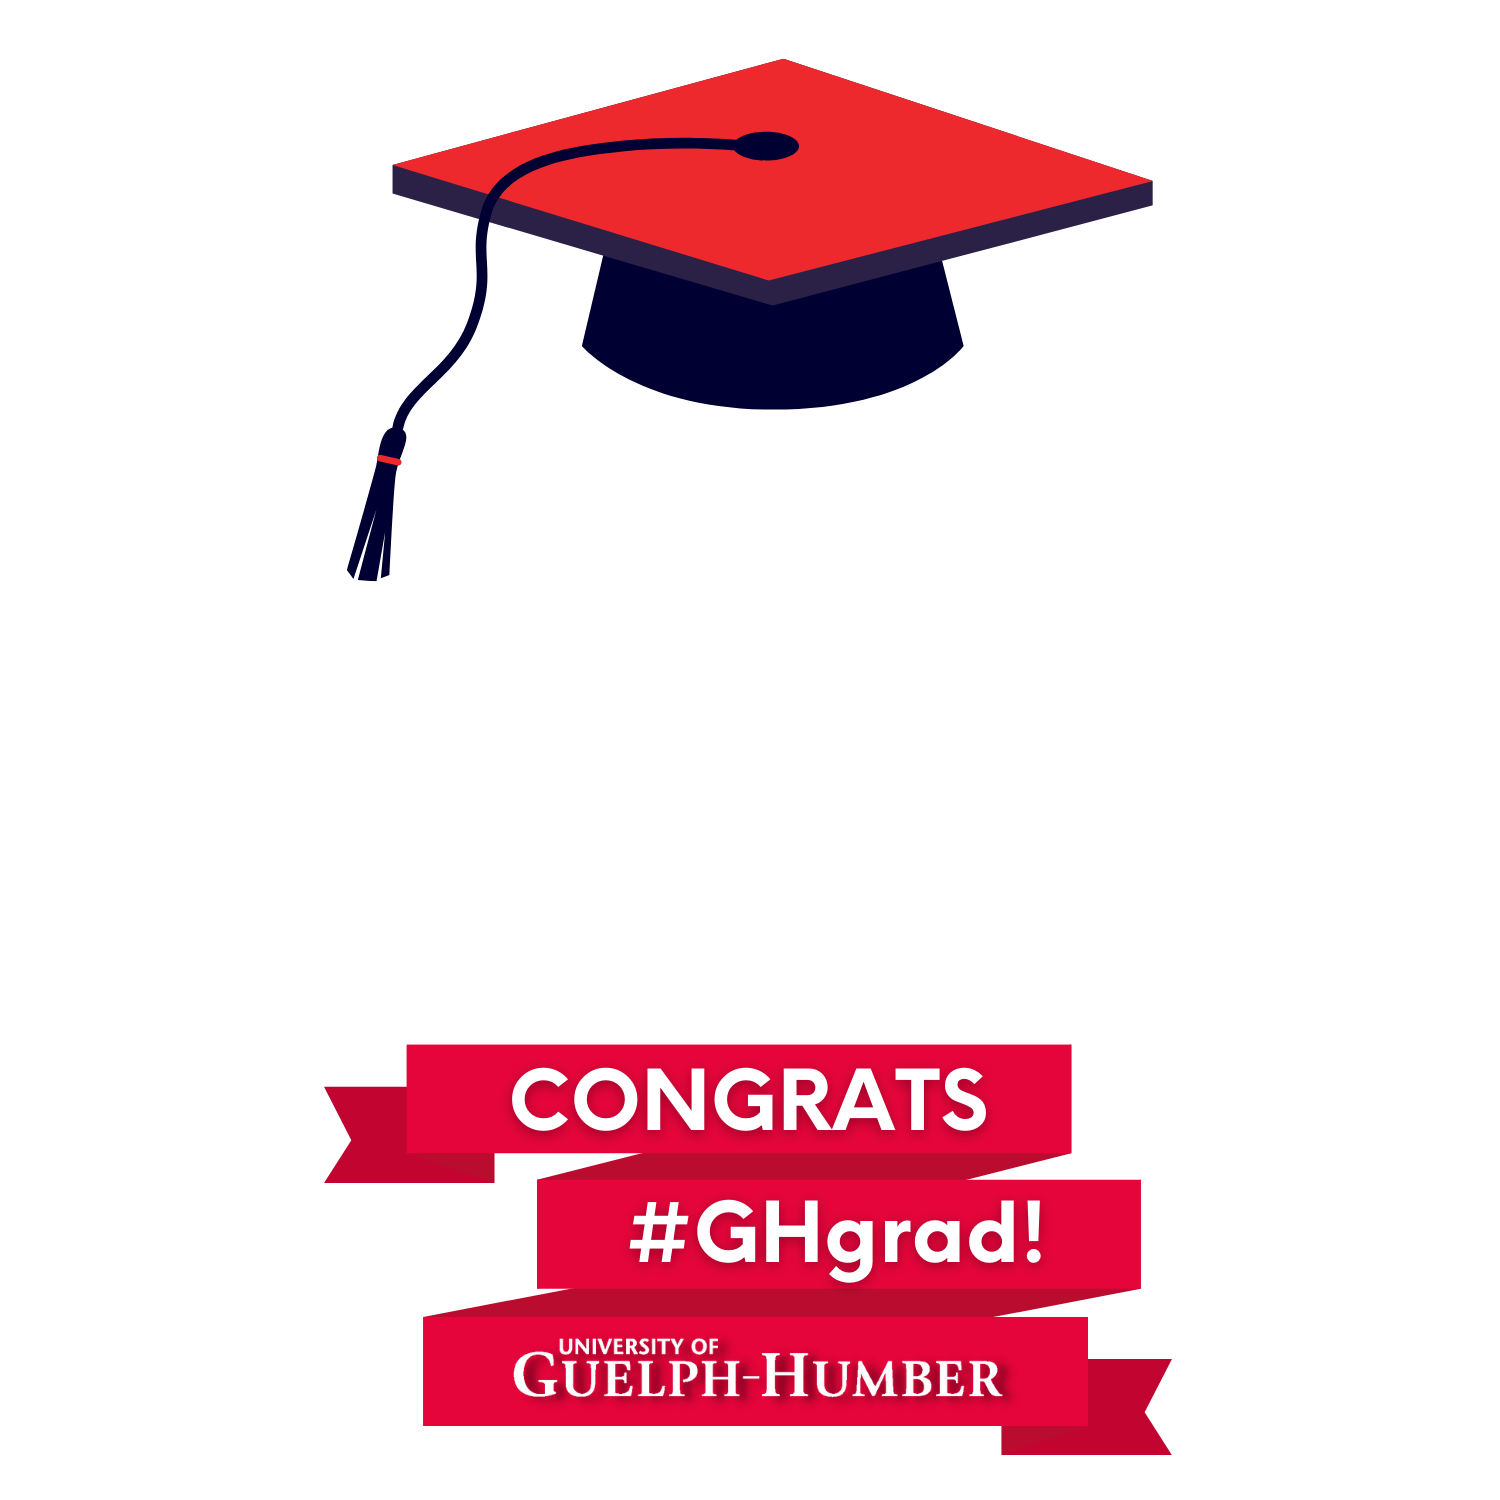 Use Facebook profile frame: Congrats #GHgrad!